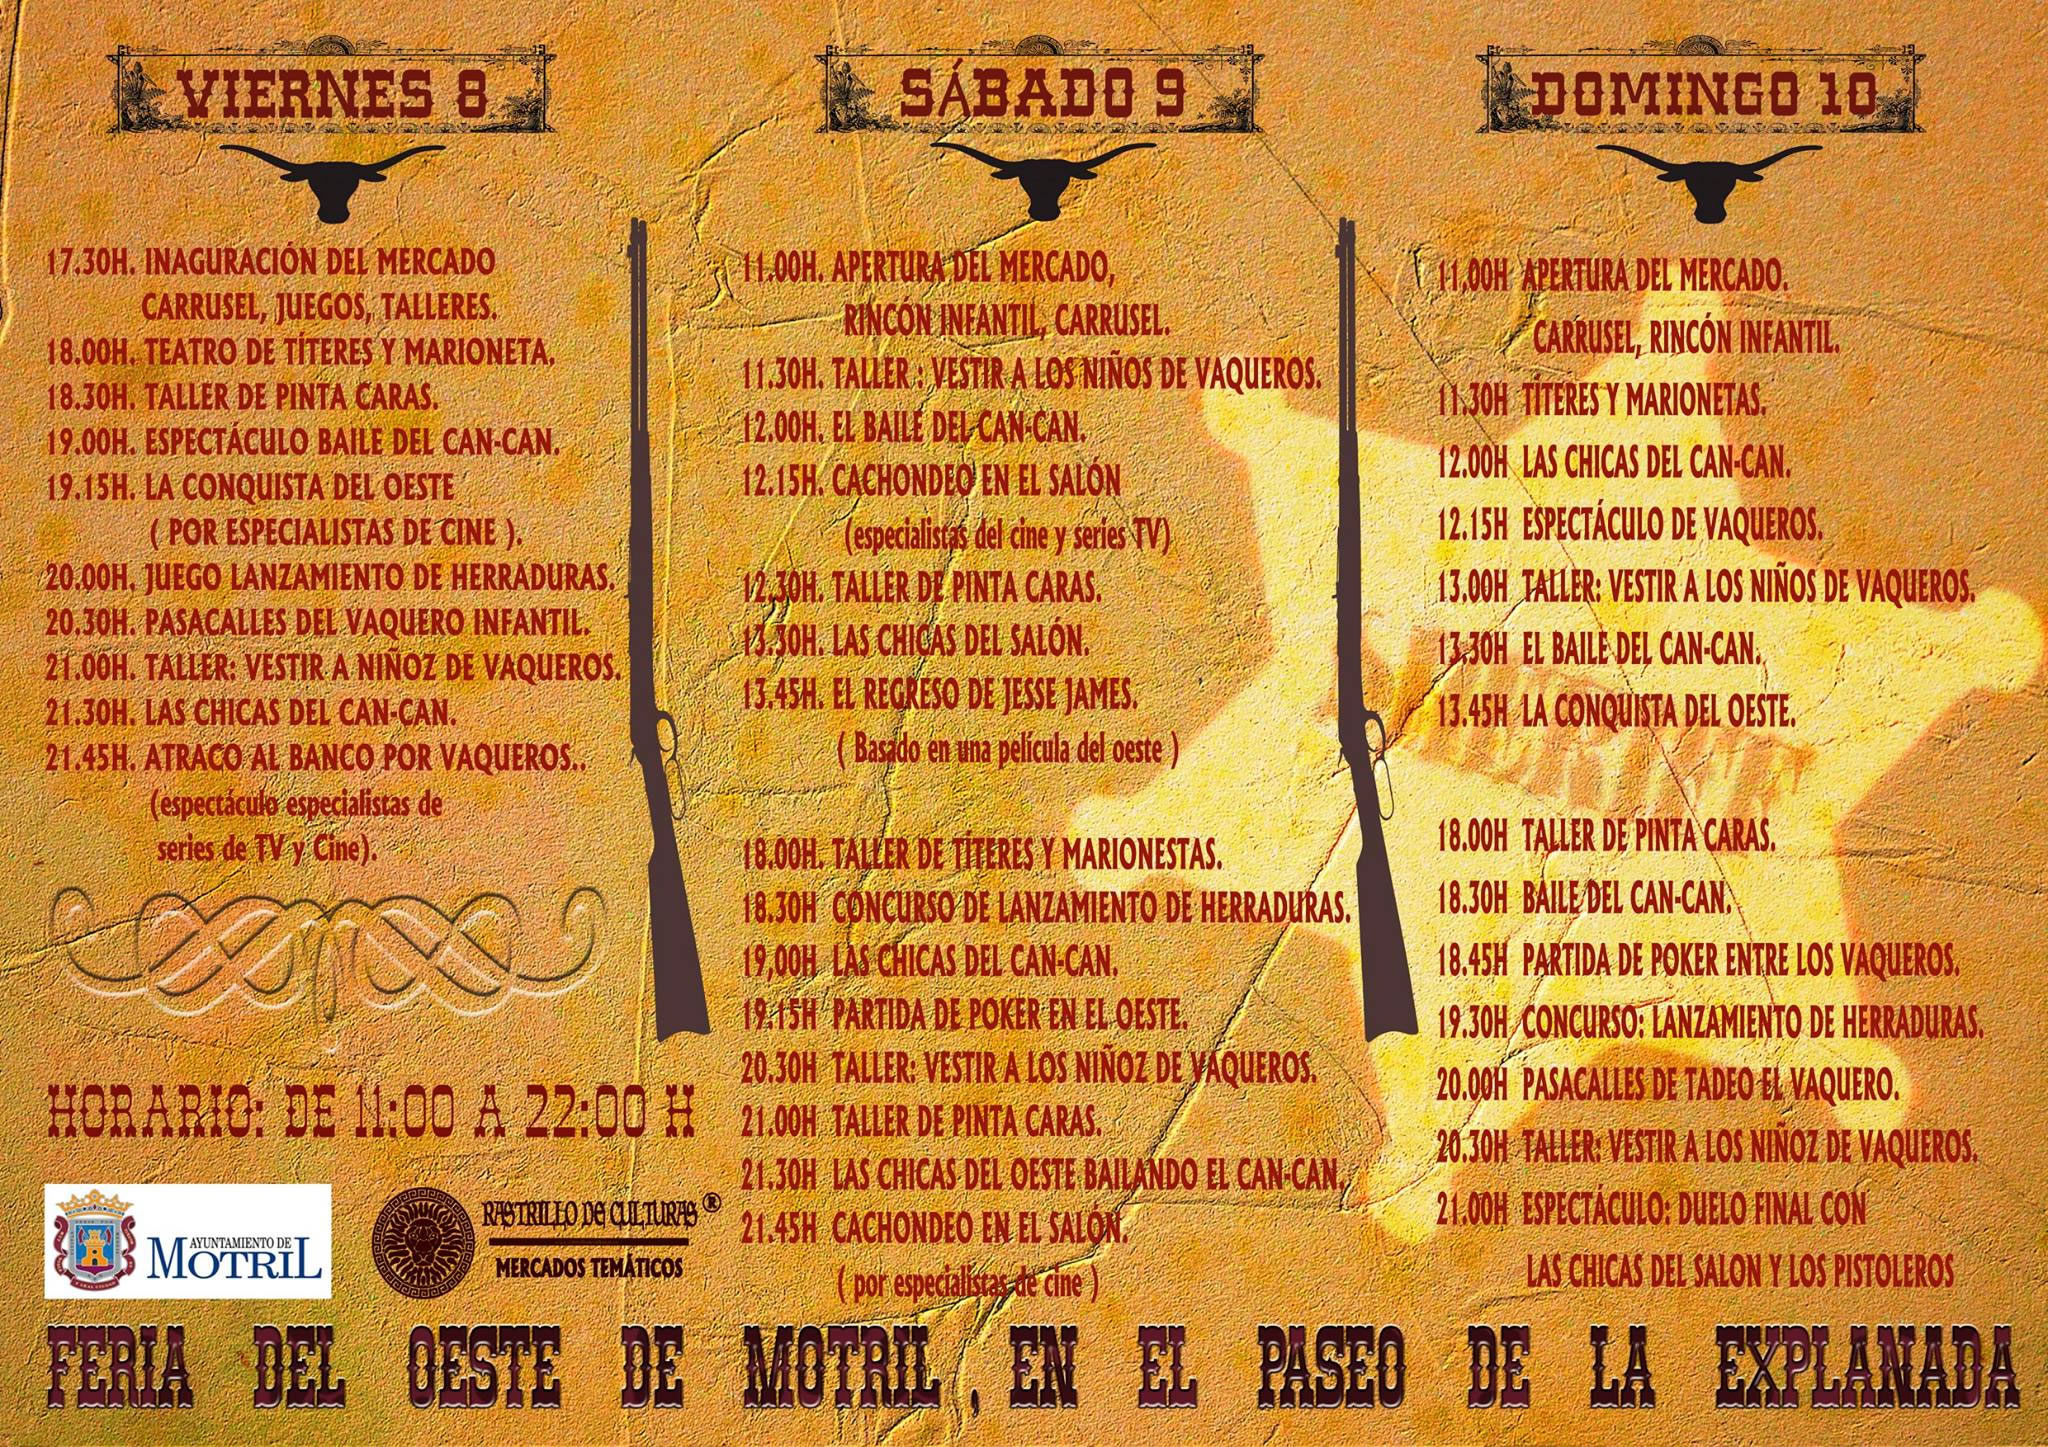 Programa de actividades de la Feria del Oeste en Motril, Granada del 08 al 10 de Mayo del 2015